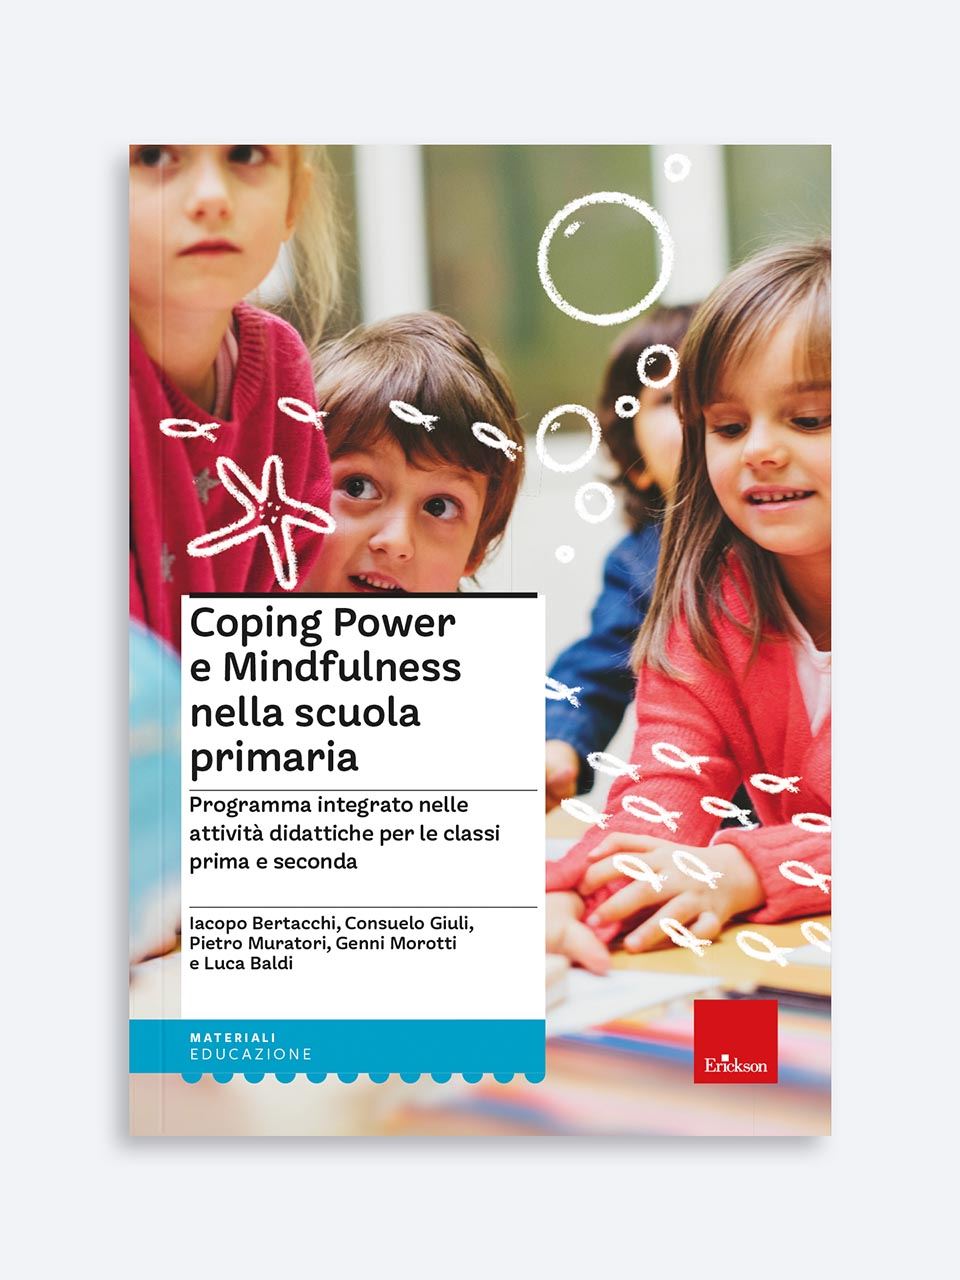 Coping Power e Mindfulness per la scuola primaria 2